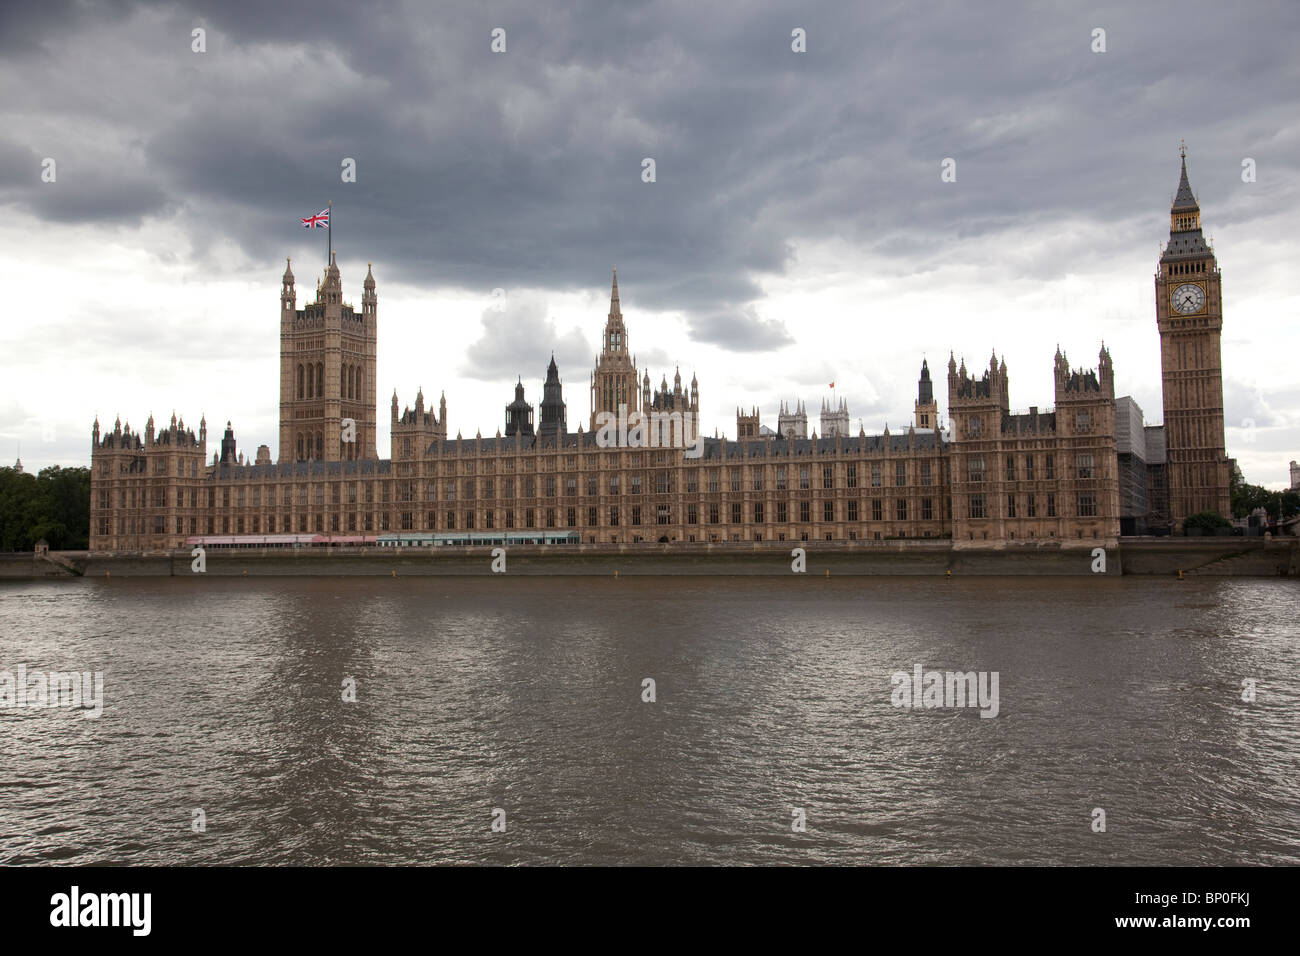 El Palacio de Westminster, también conocido como las Casas del Parlamento o el Palacio de Westminster. Foto:Jeff Gilbert Foto de stock